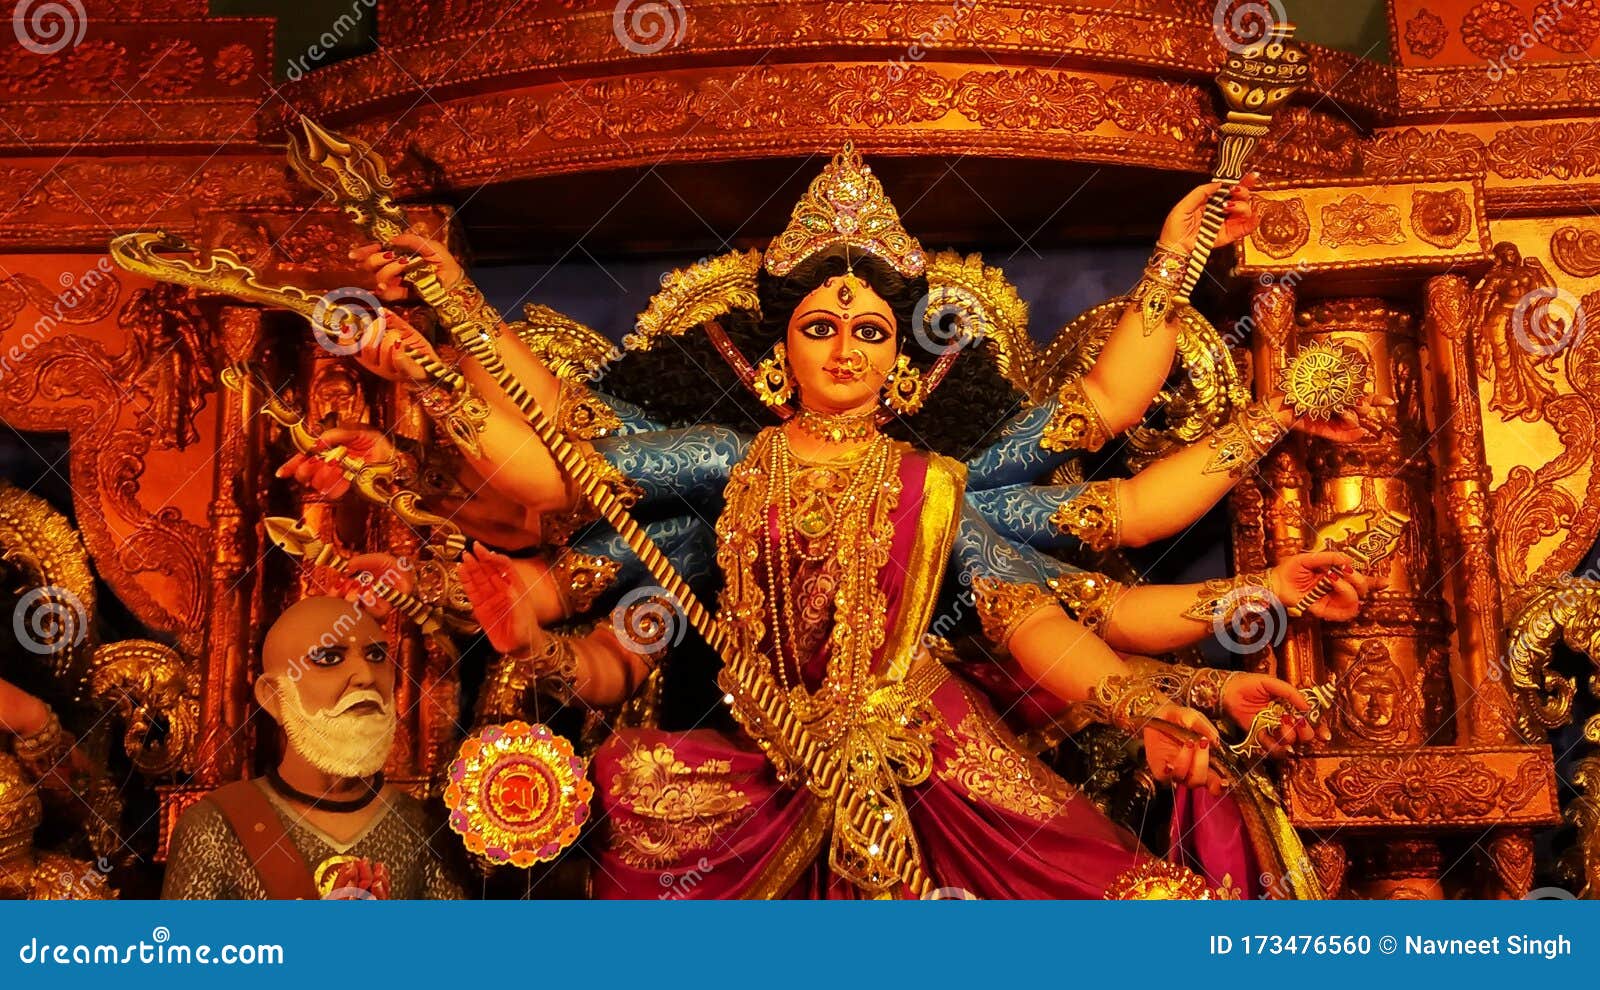 Durga ma in navratri stock photo. Image of durgapuja - 173476560